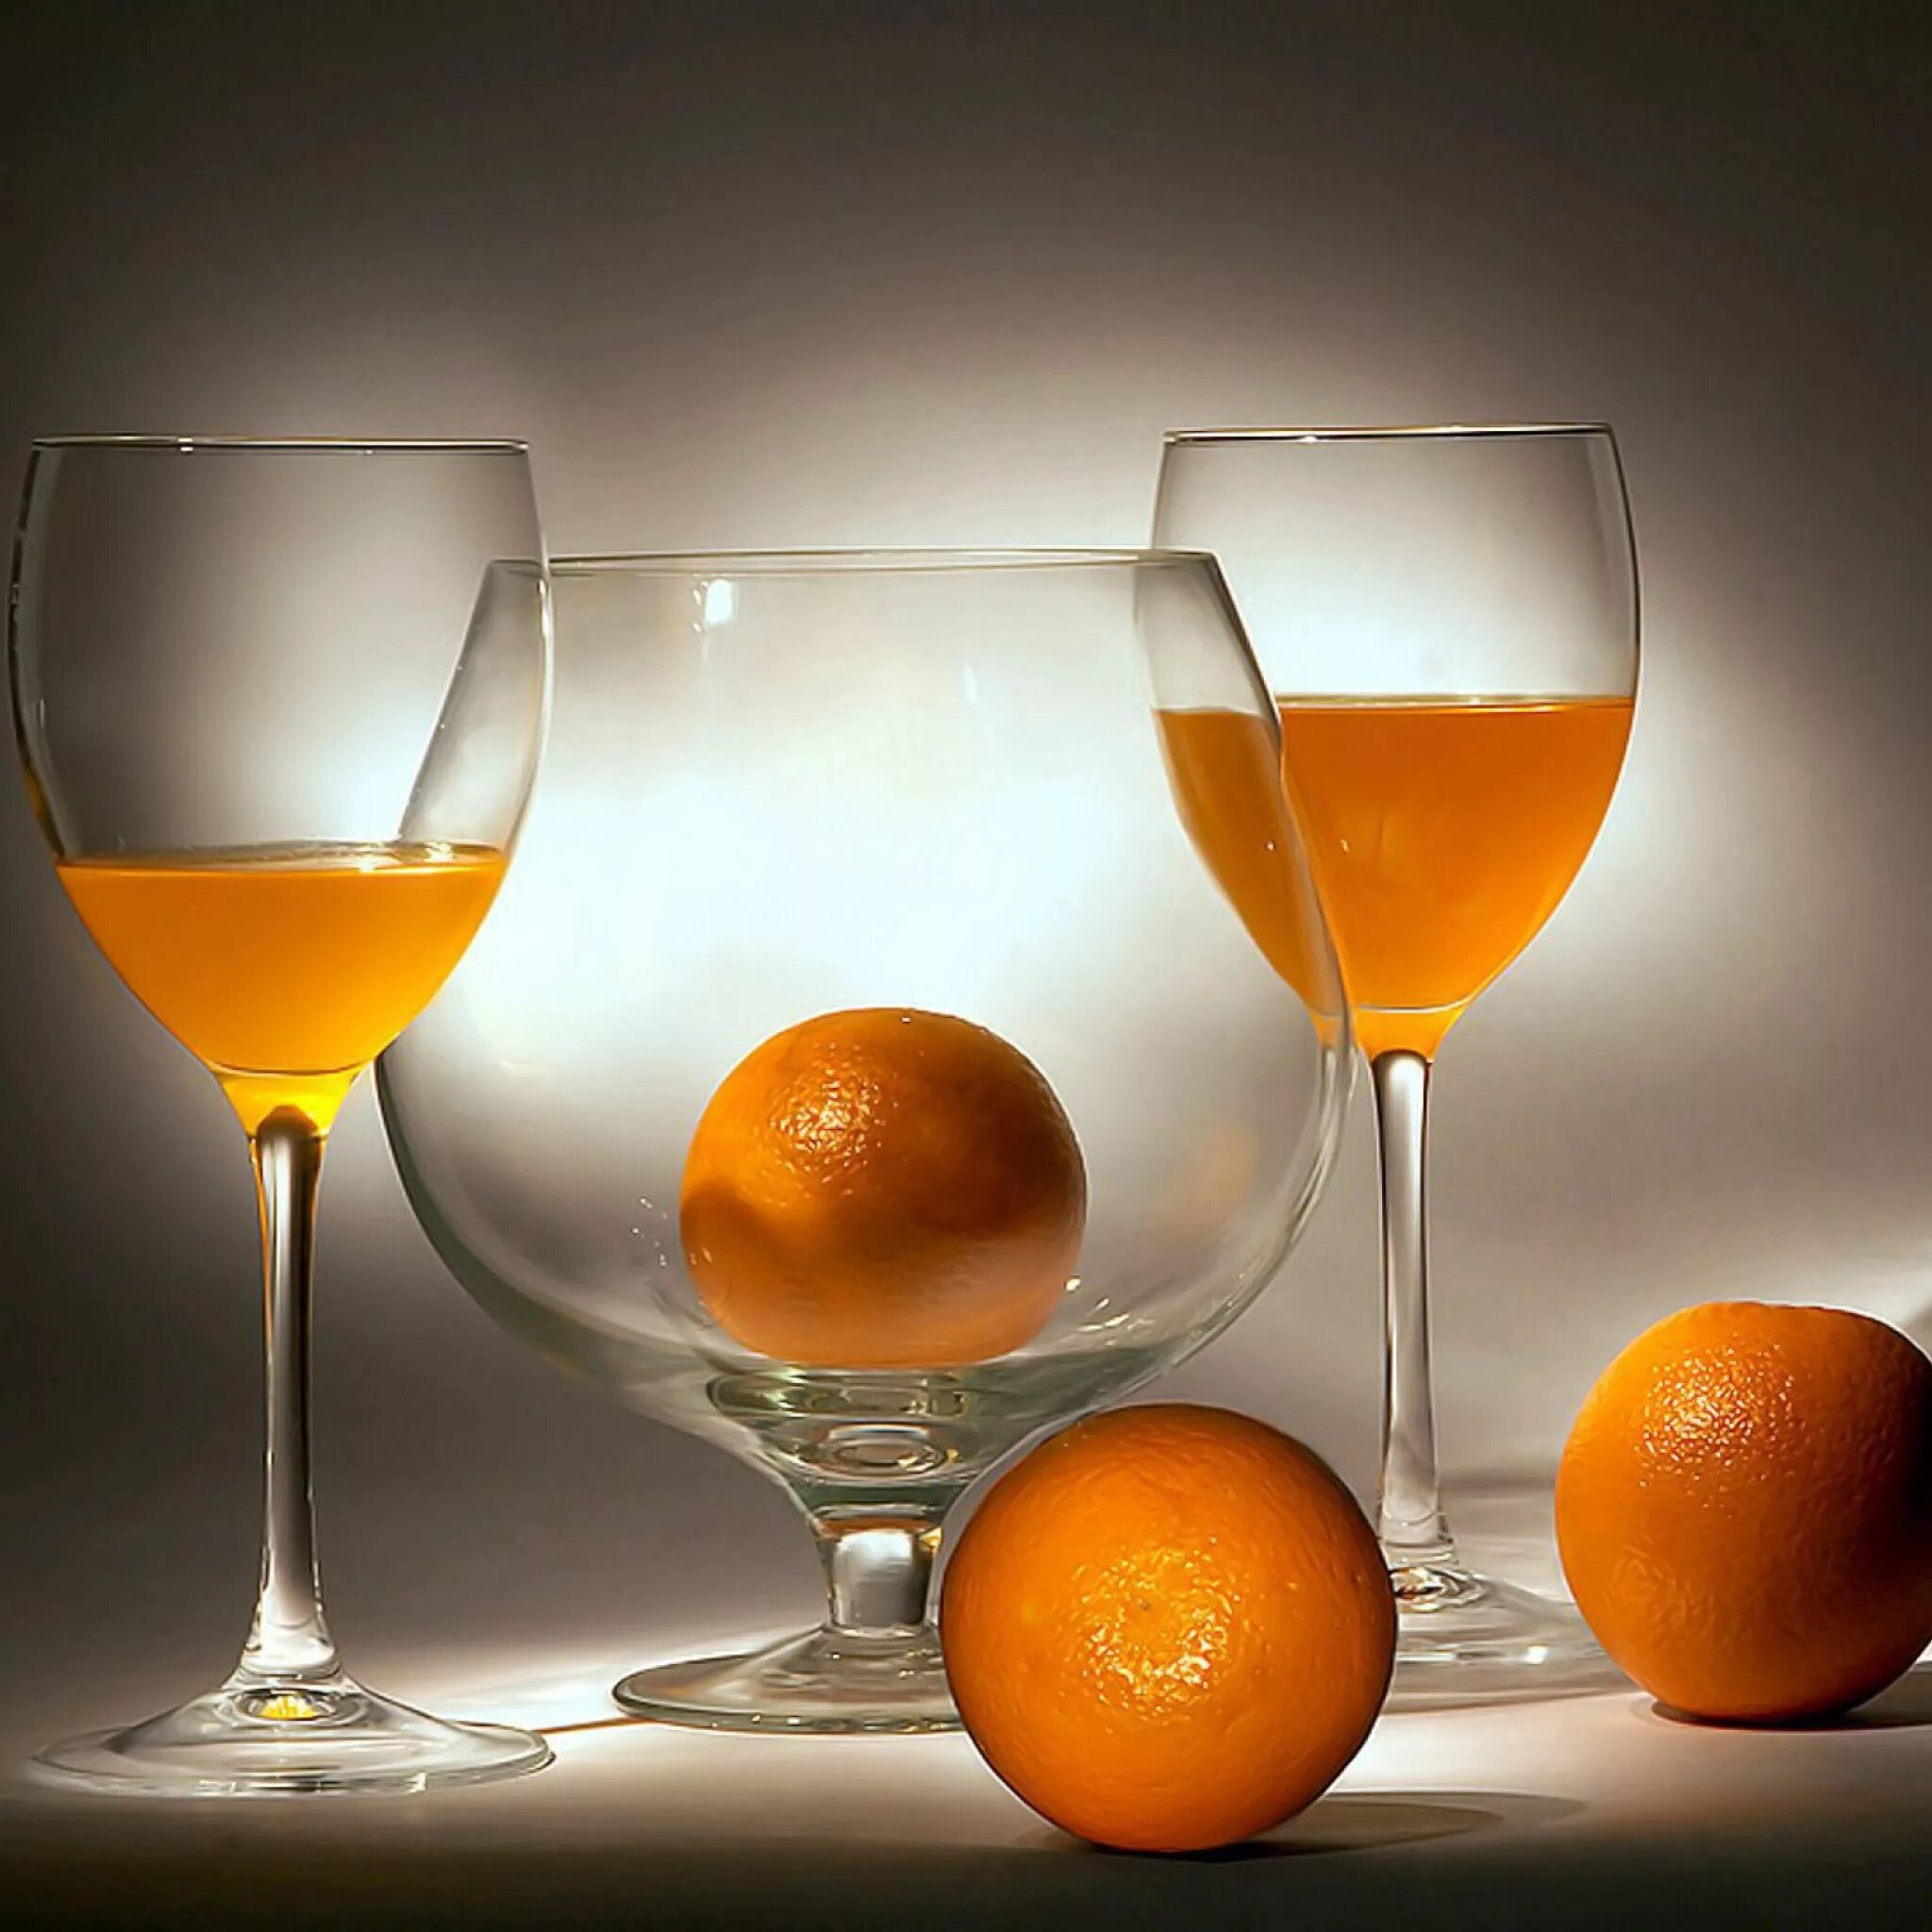 Рекламный натюрморт. Оранжевый натюрморт. Апельсин на столе. Апельсин в воде. Сладкие вина фреш